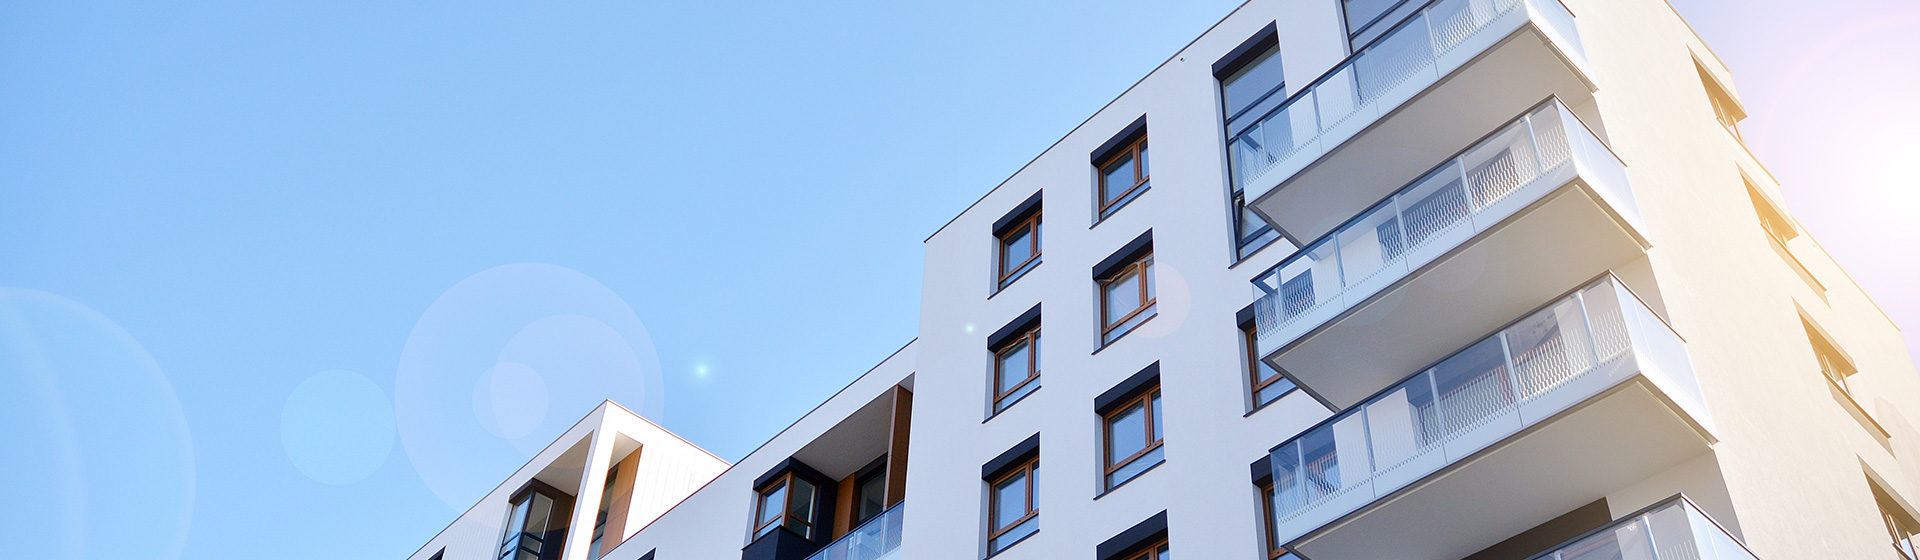 Moderne Mehrfamilienhäuser mit Balkonen unter blauem Himmel – Gewerbeverwaltung inveni consulting 